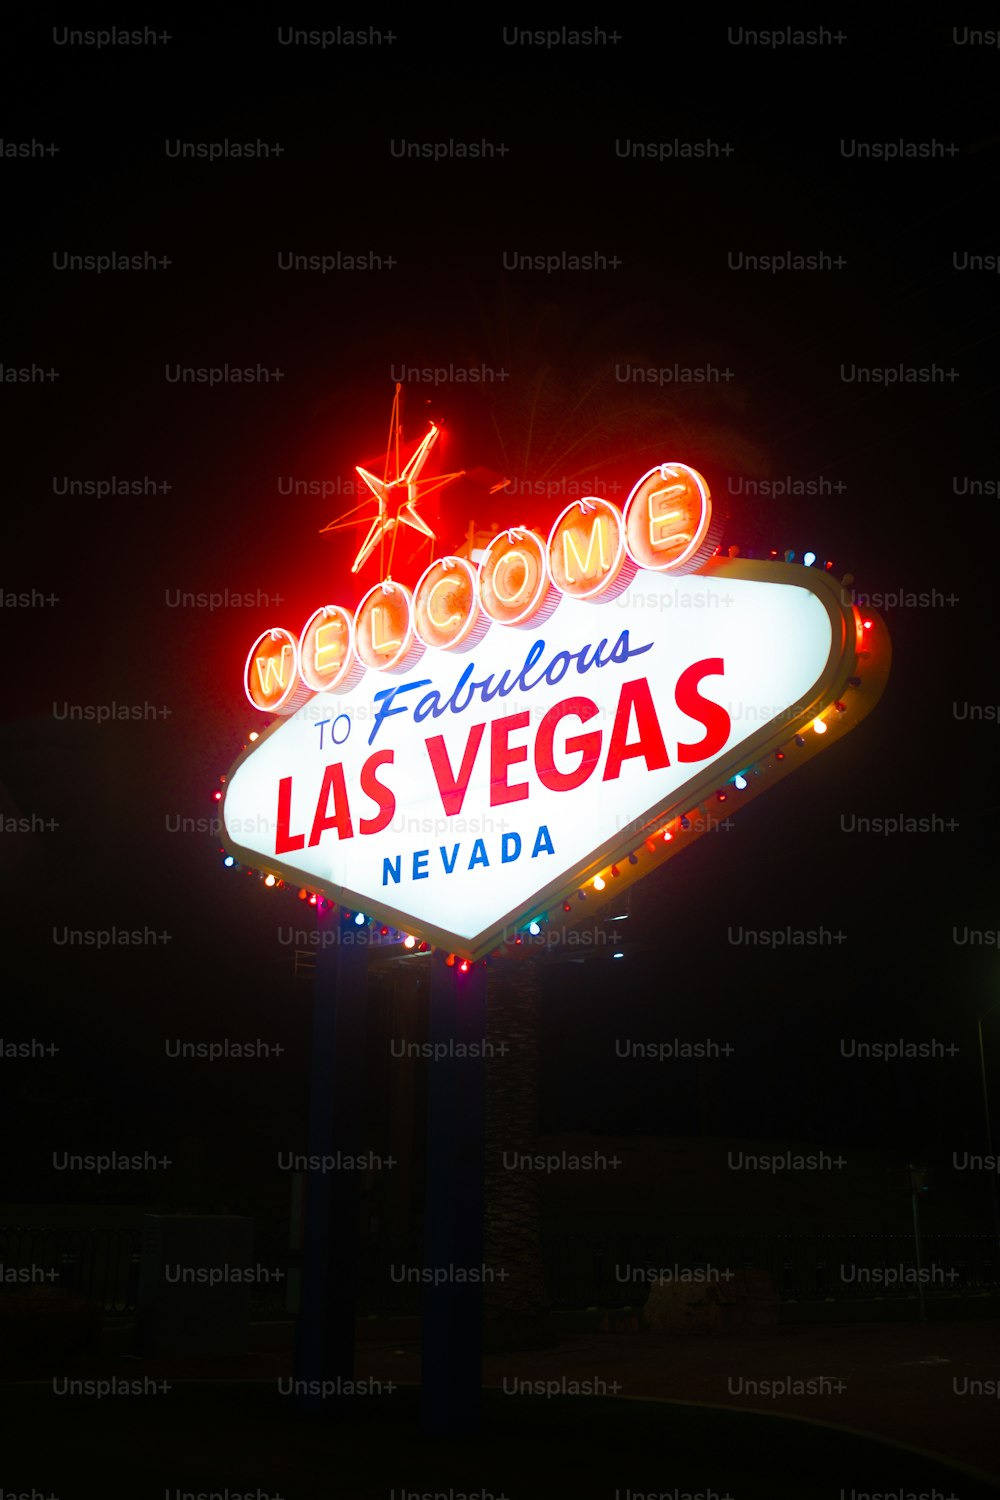 Une enseigne au néon qui dit bienvenue à Fabulous Las Vegas